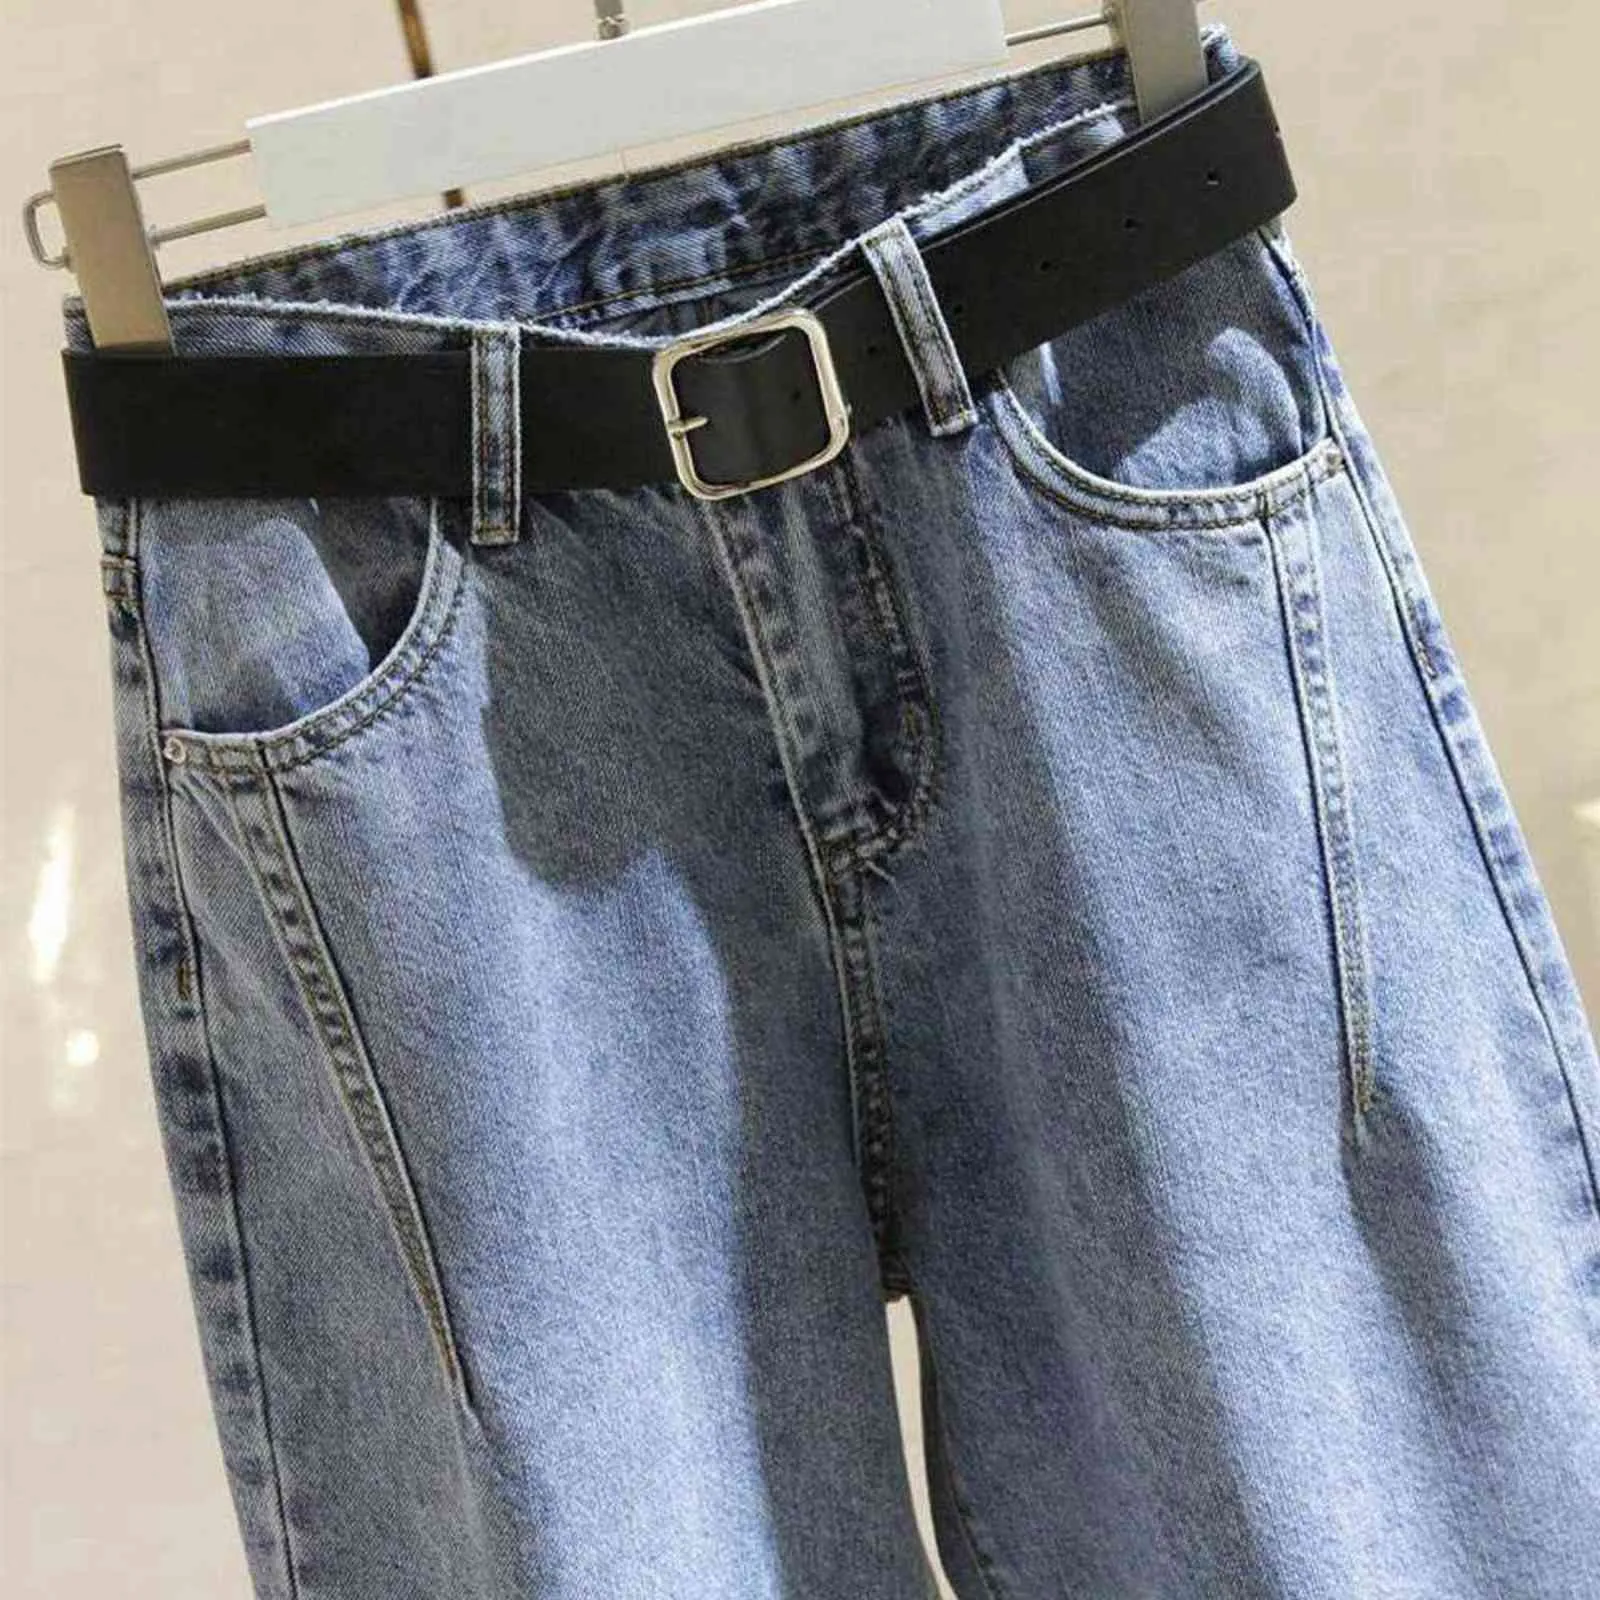 Hohe Taille Jeans Frauen Harem Hosen Lose Beiläufige Koreanische Mom Jean Vintage Weibliche Denim Hosen Plus Größe Pantalon Mit Gürtel 211104